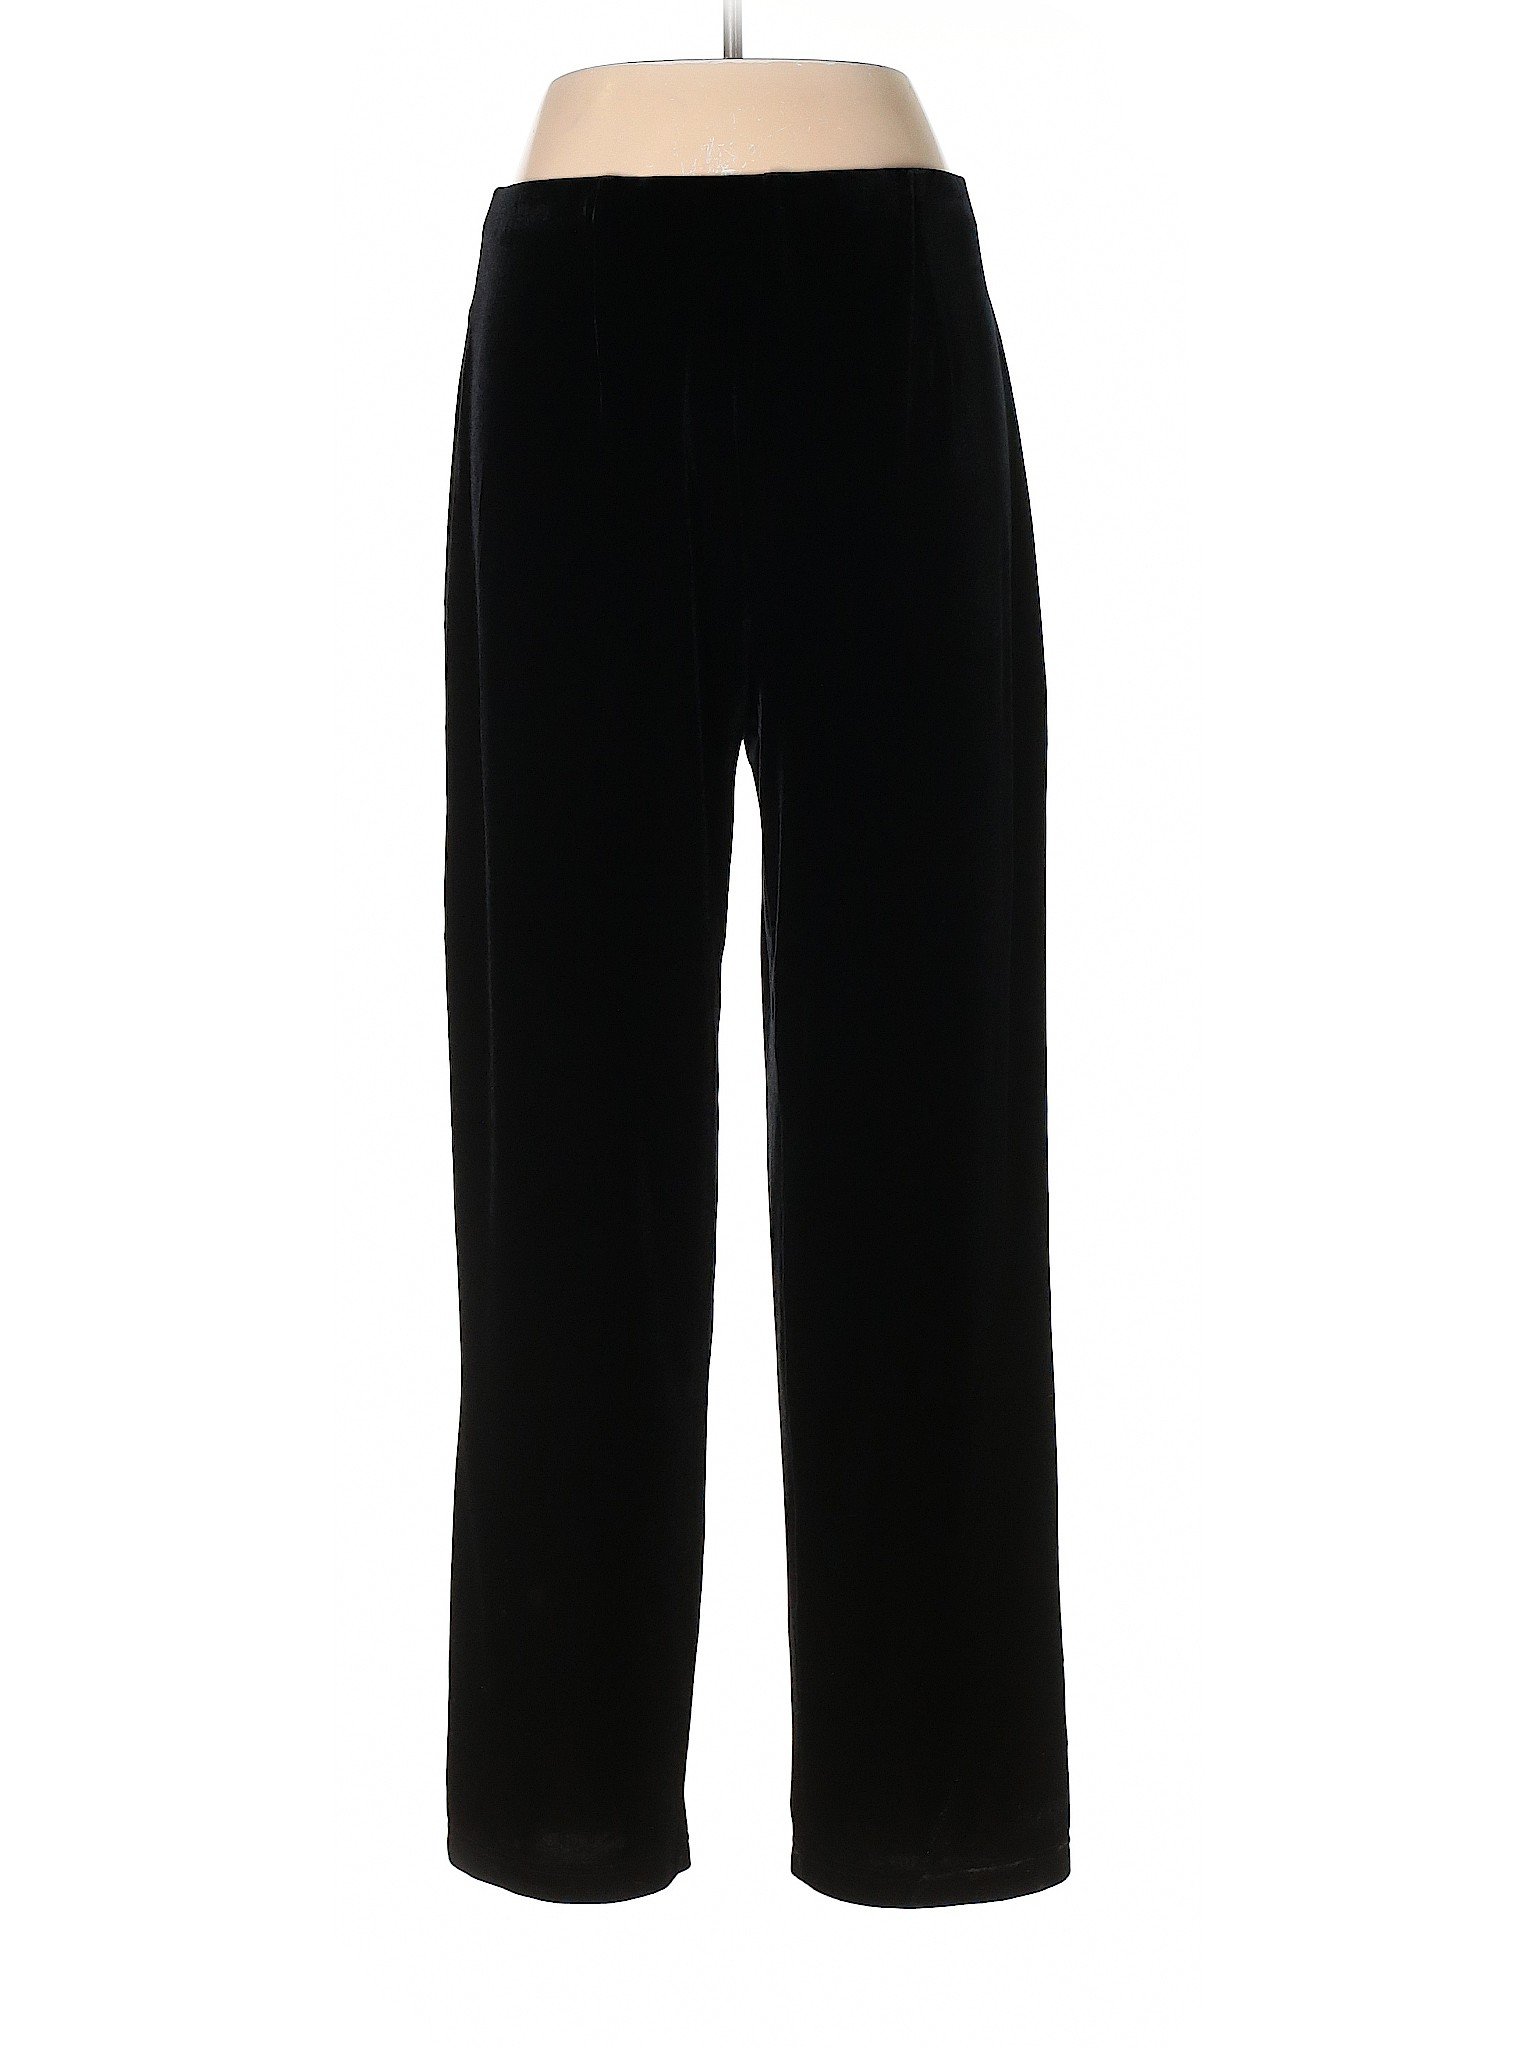 Jaclyn Smith Women Black Casual Pants L | eBay